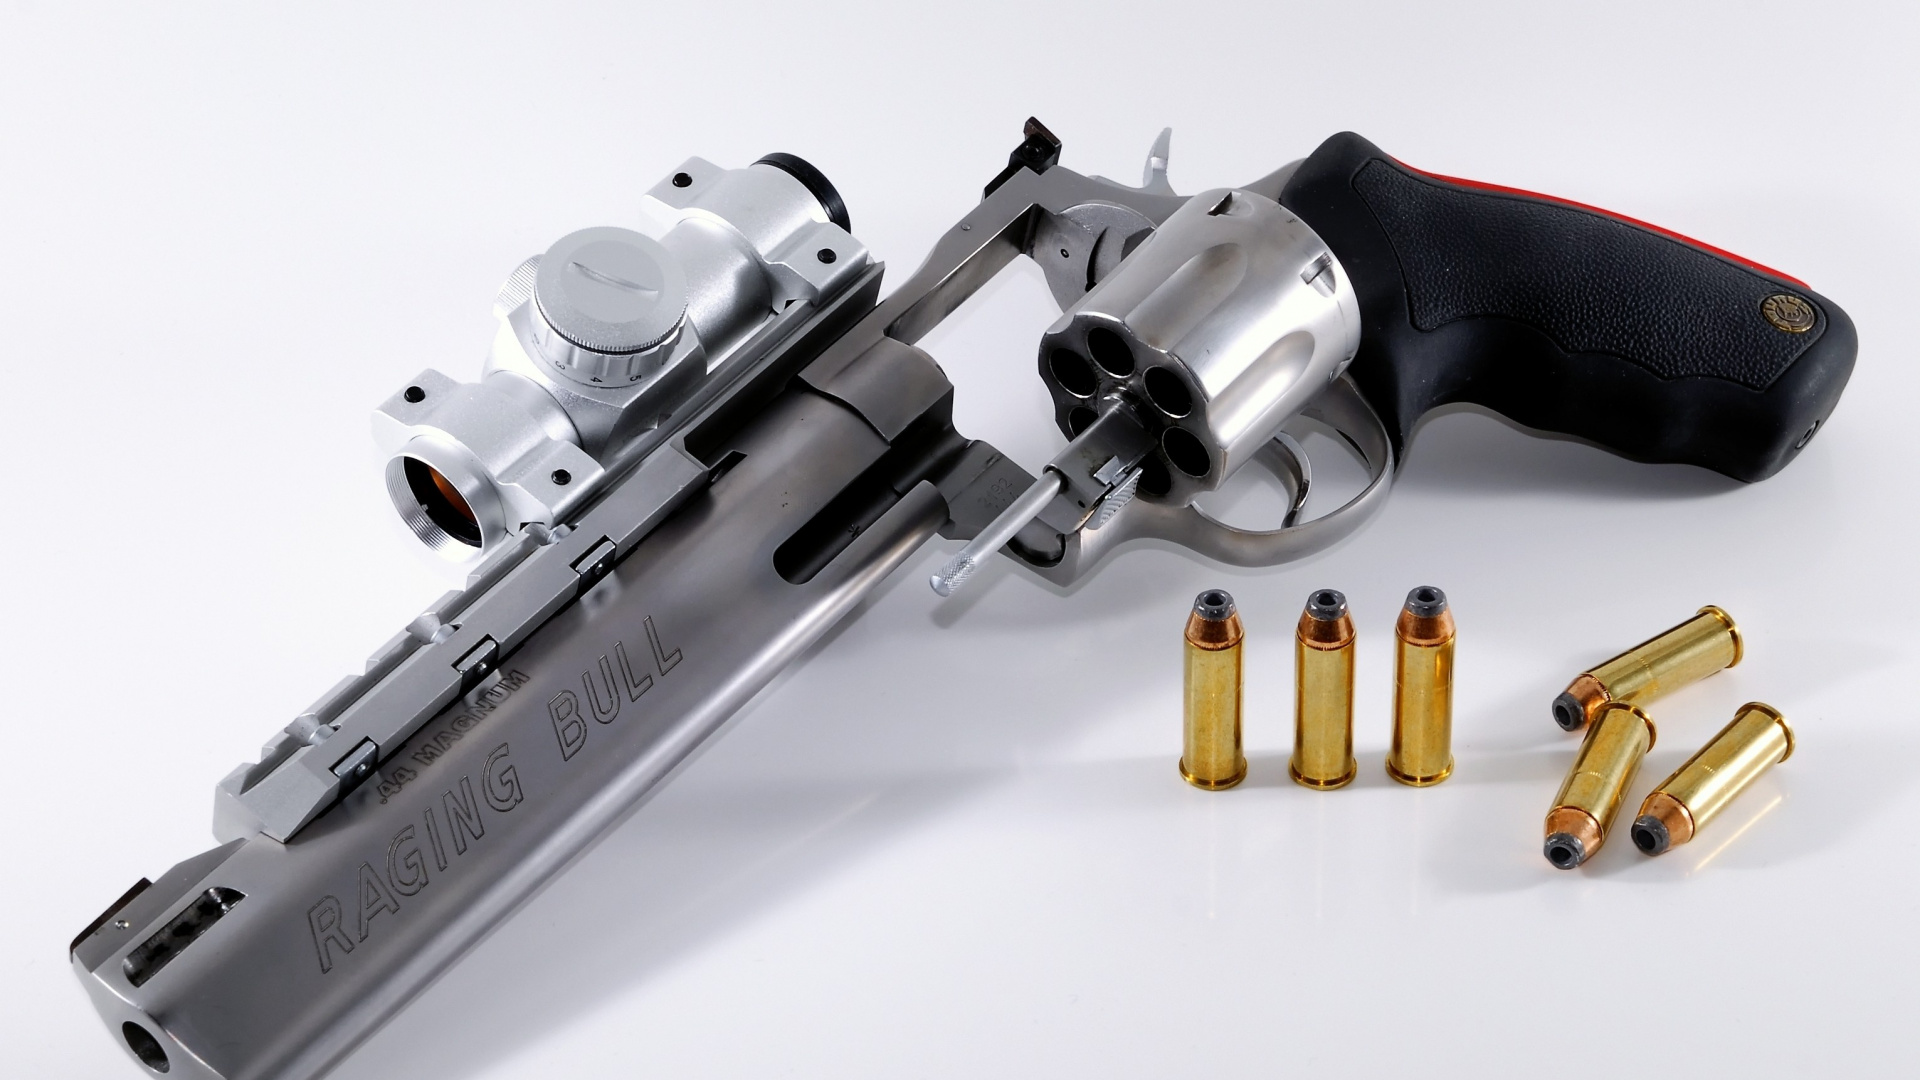 Revolver, Munition, Trigger, Handfeuerwaffe, Waffe. Wallpaper in 1920x1080 Resolution